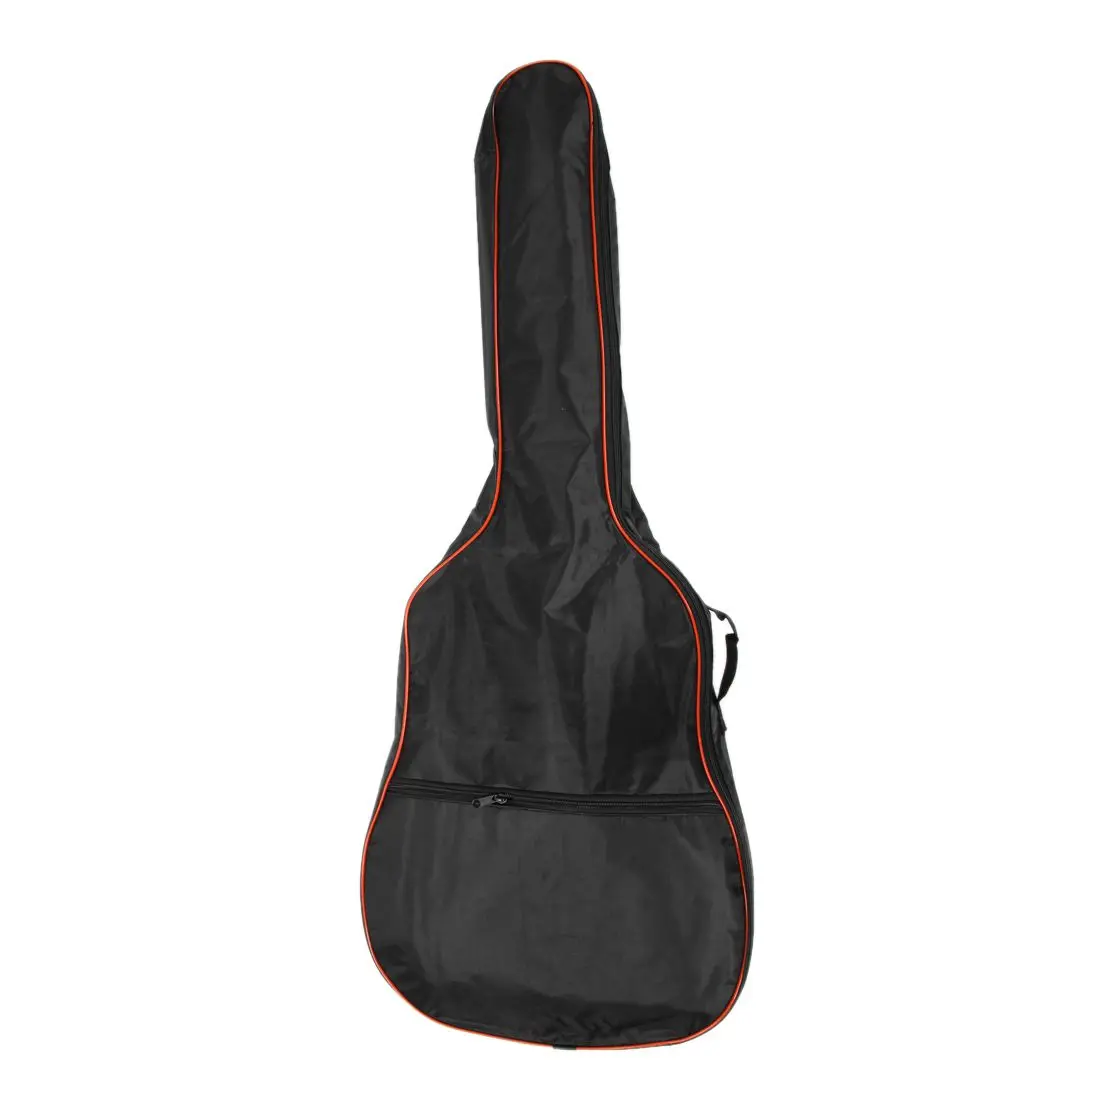 Мода 41 дюймов Классическая акустическая гитара задняя крышка чехол сумка 5 мм плечевые ремни